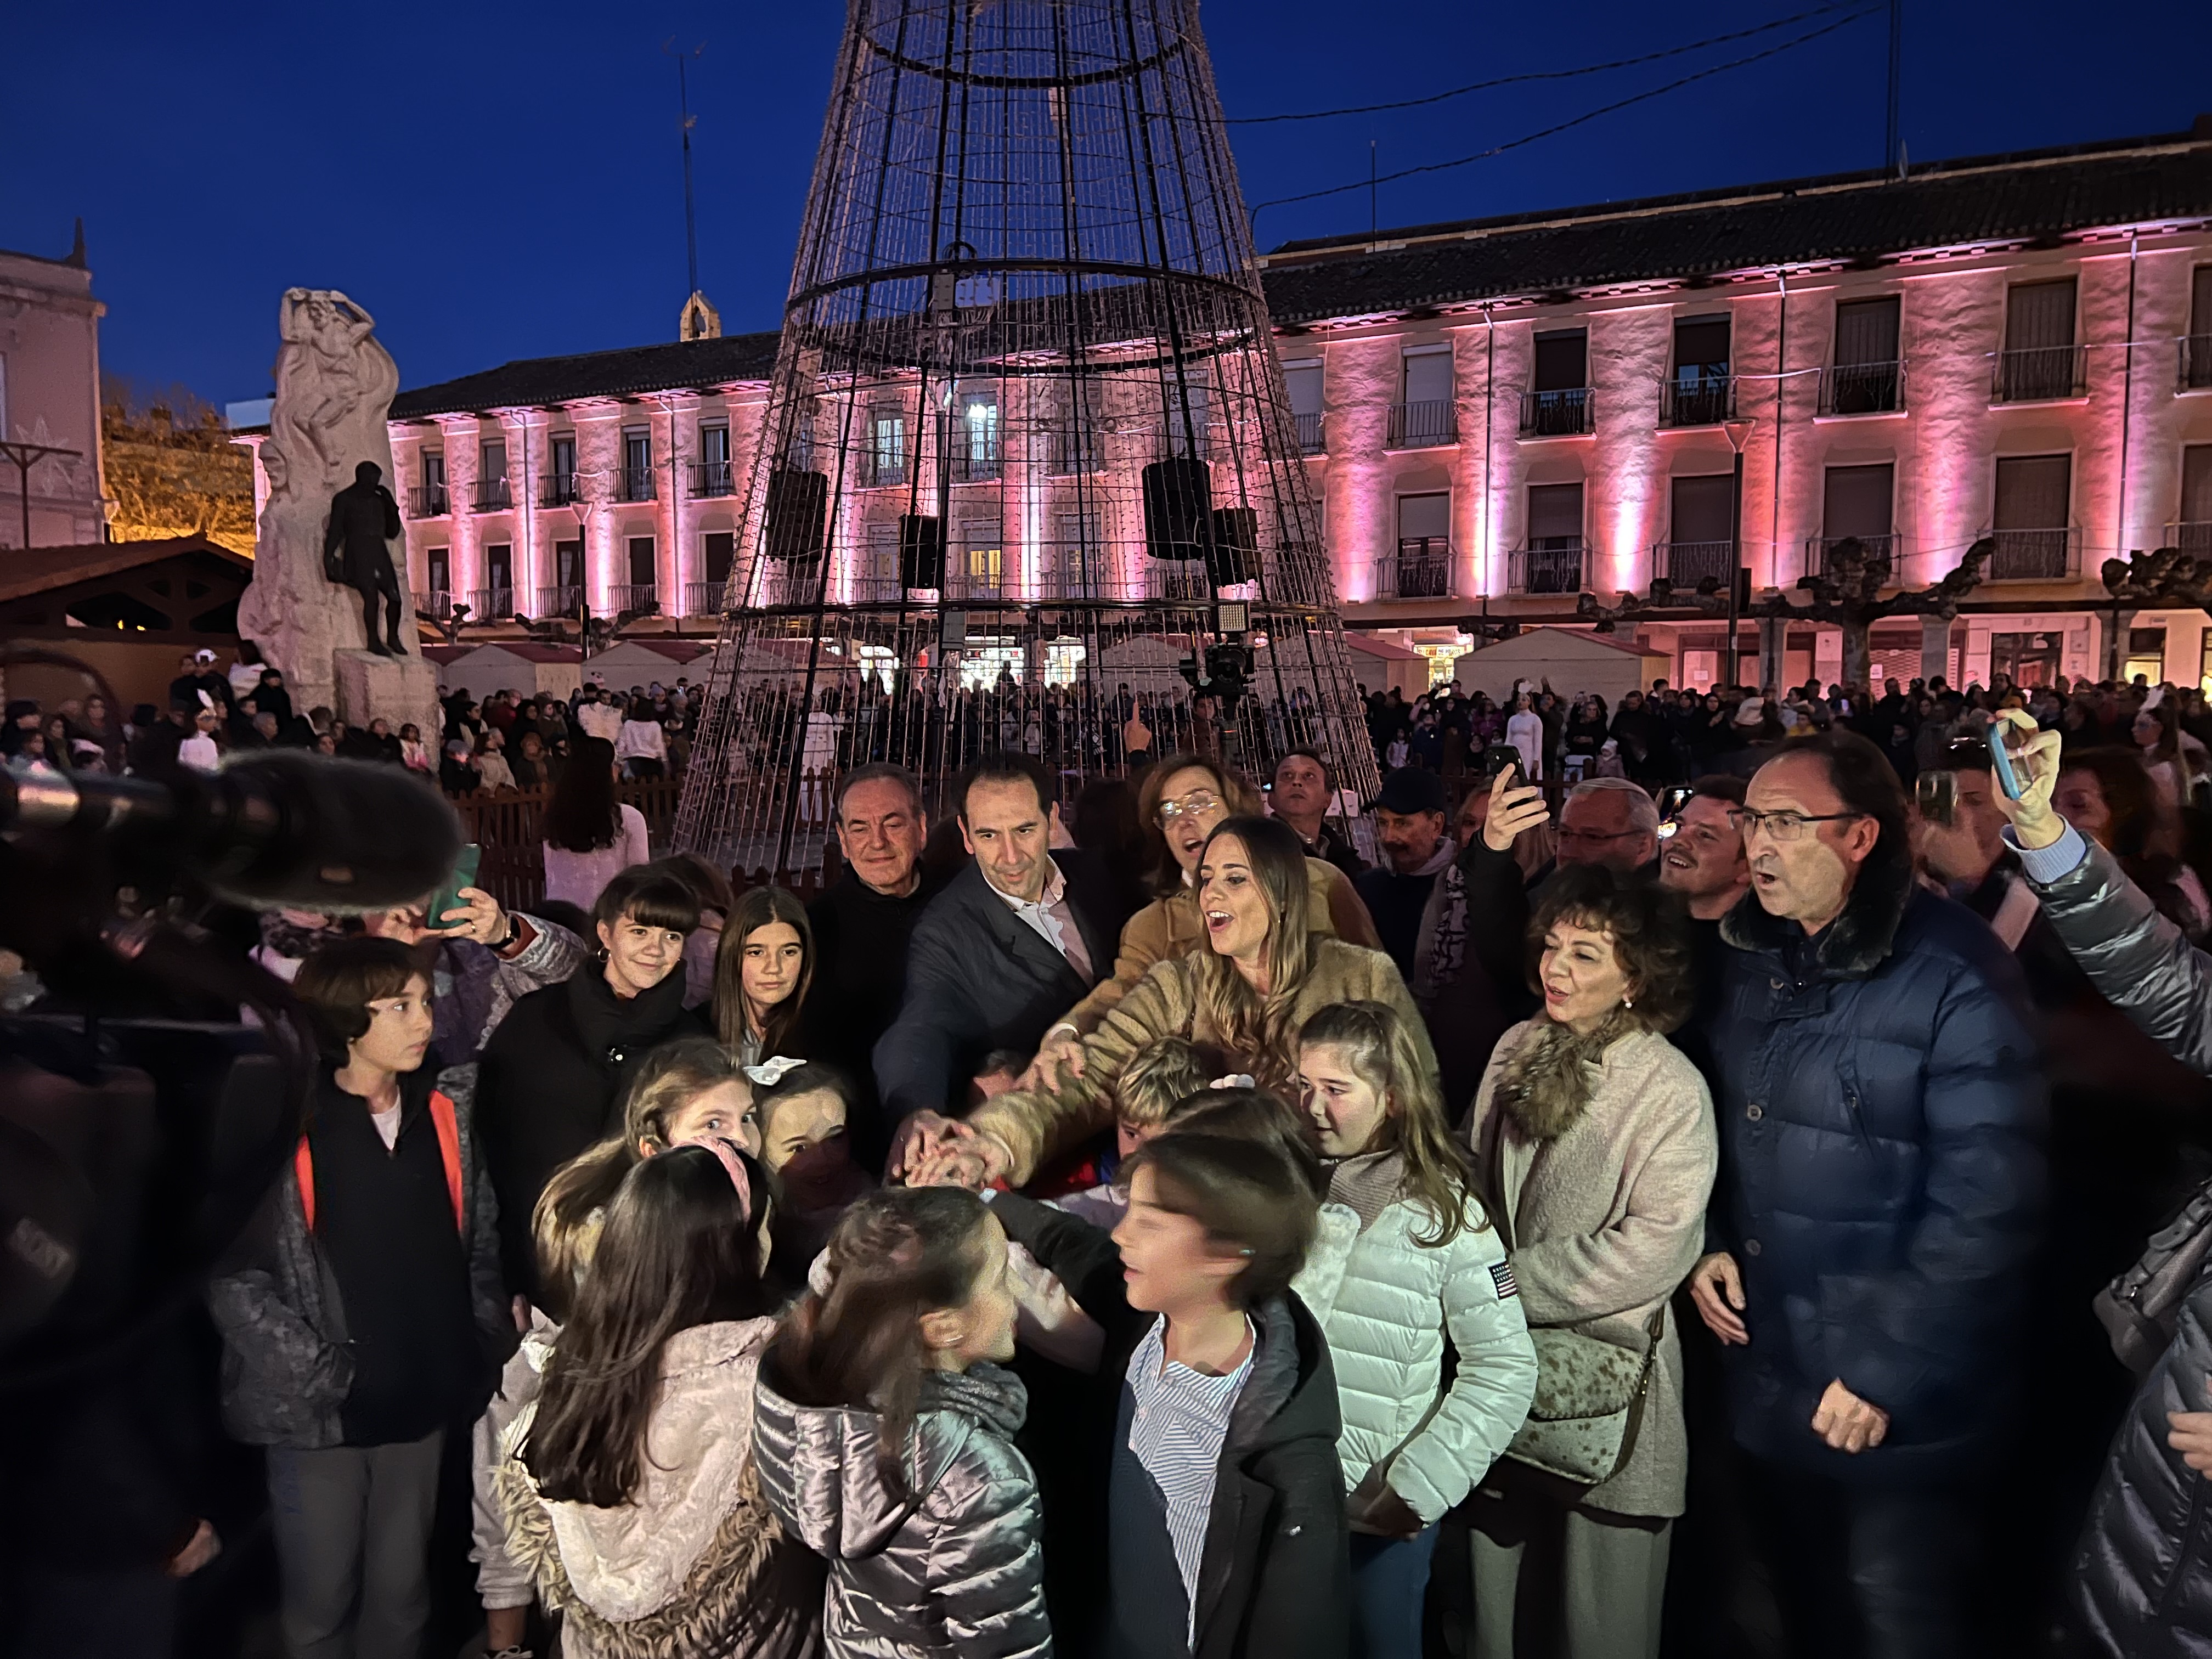 imagen Eficiencia e innovación en las luces navideñas de Palencia que ofrecerán, por primera vez, espectáculos de luz y sonido sincronizados en la calle mayor